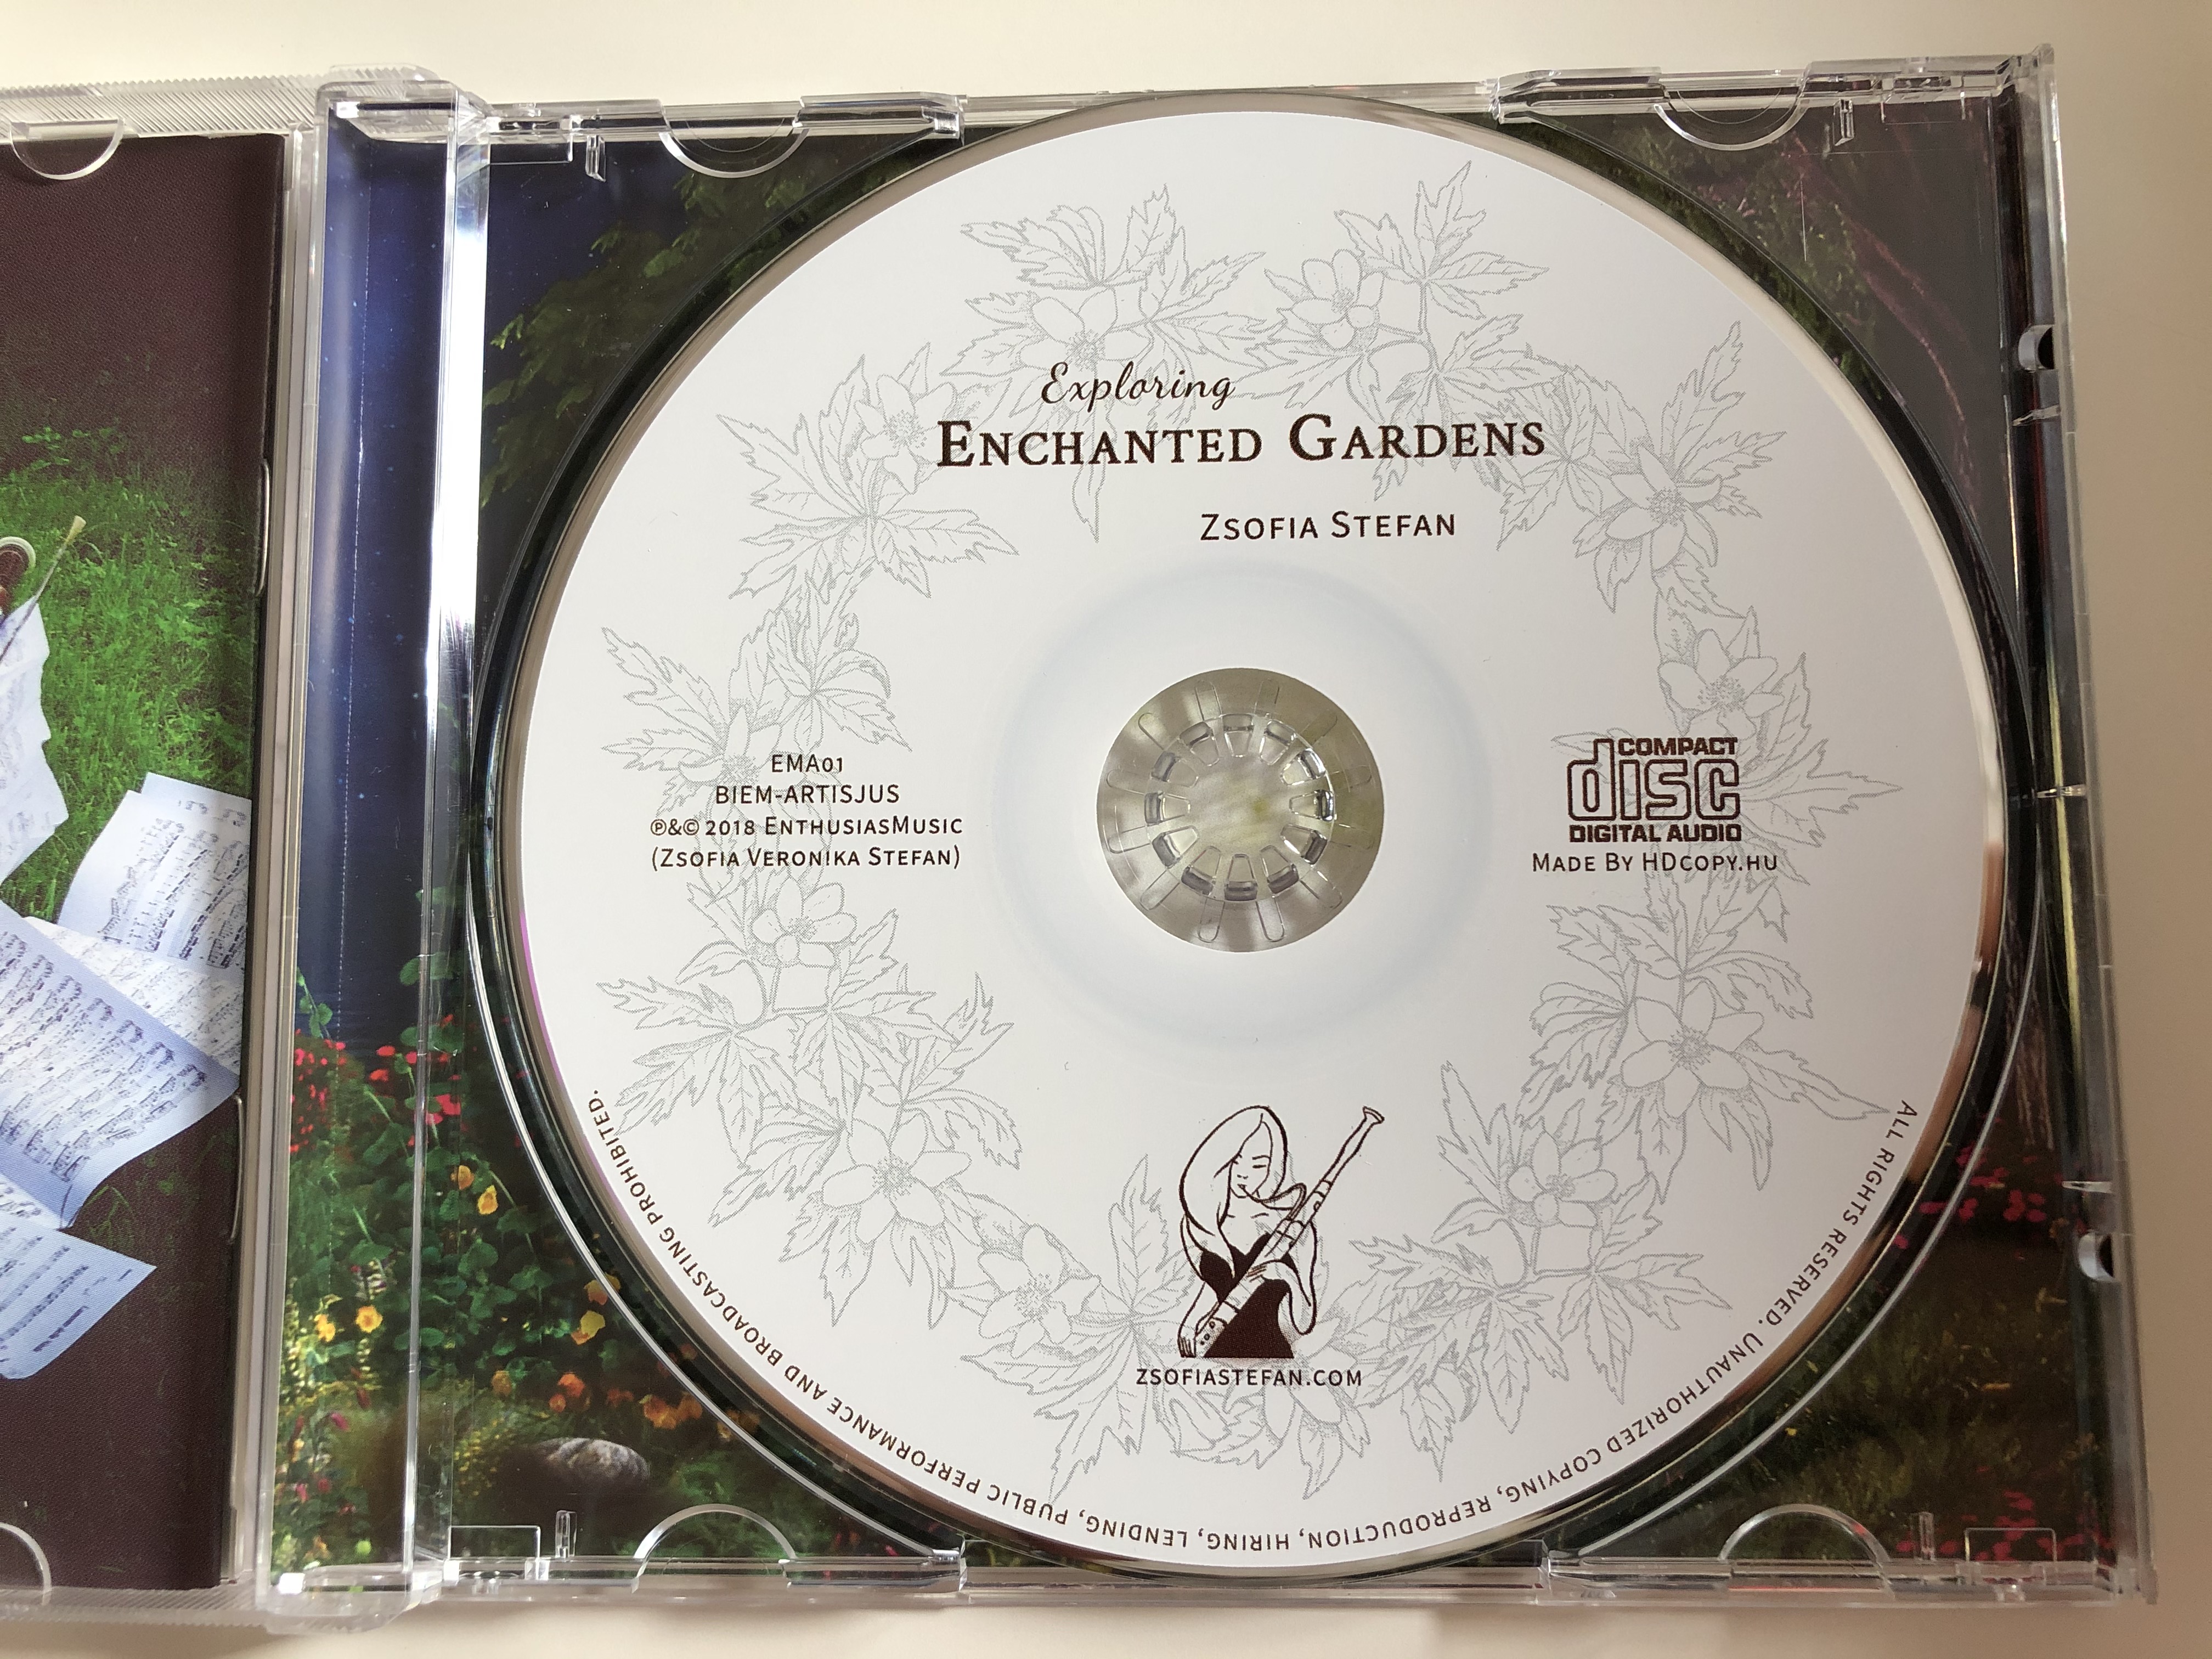 exploring-enchanted-gardens-zsofia-stefan-enthusiasmusic-audio-cd-2018-192650001848-8-.jpg